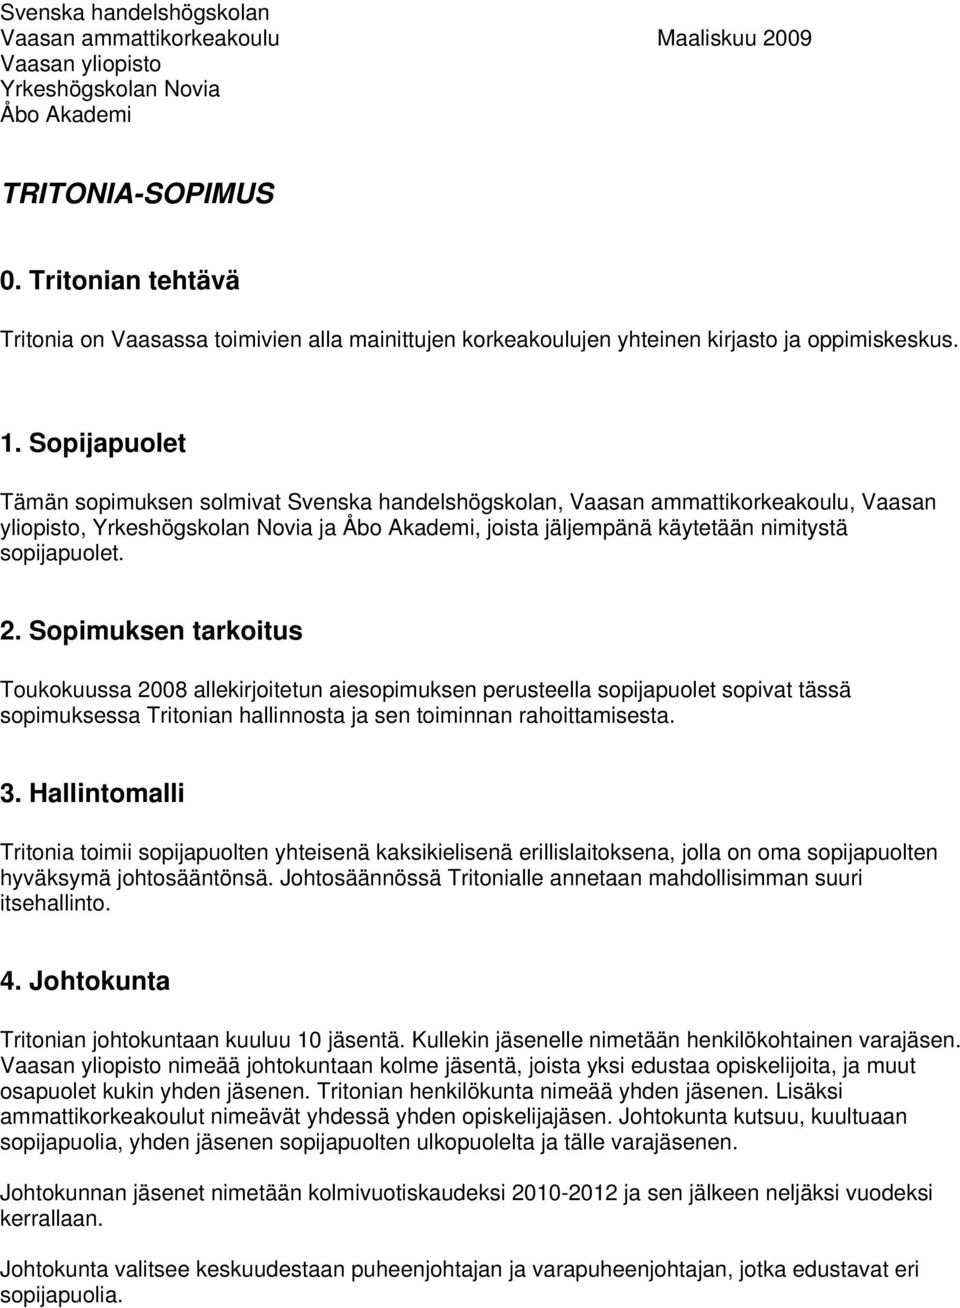 Sopijapuolet Tämän sopimuksen solmivat Svenska handelshögskolan, Vaasan ammattikorkeakoulu, Vaasan yliopisto, Yrkeshögskolan Novia ja Åbo Akademi, joista jäljempänä käytetään nimitystä sopijapuolet.